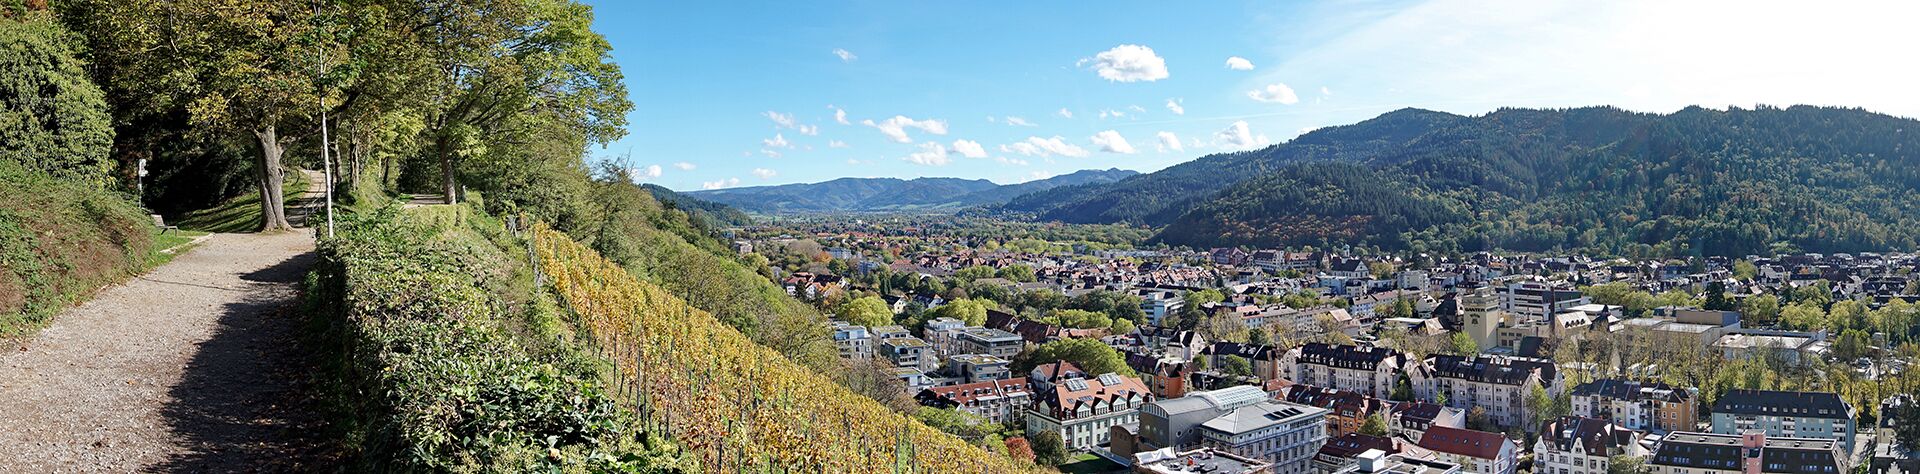 Freiburg im Breisgau - Reise buchen